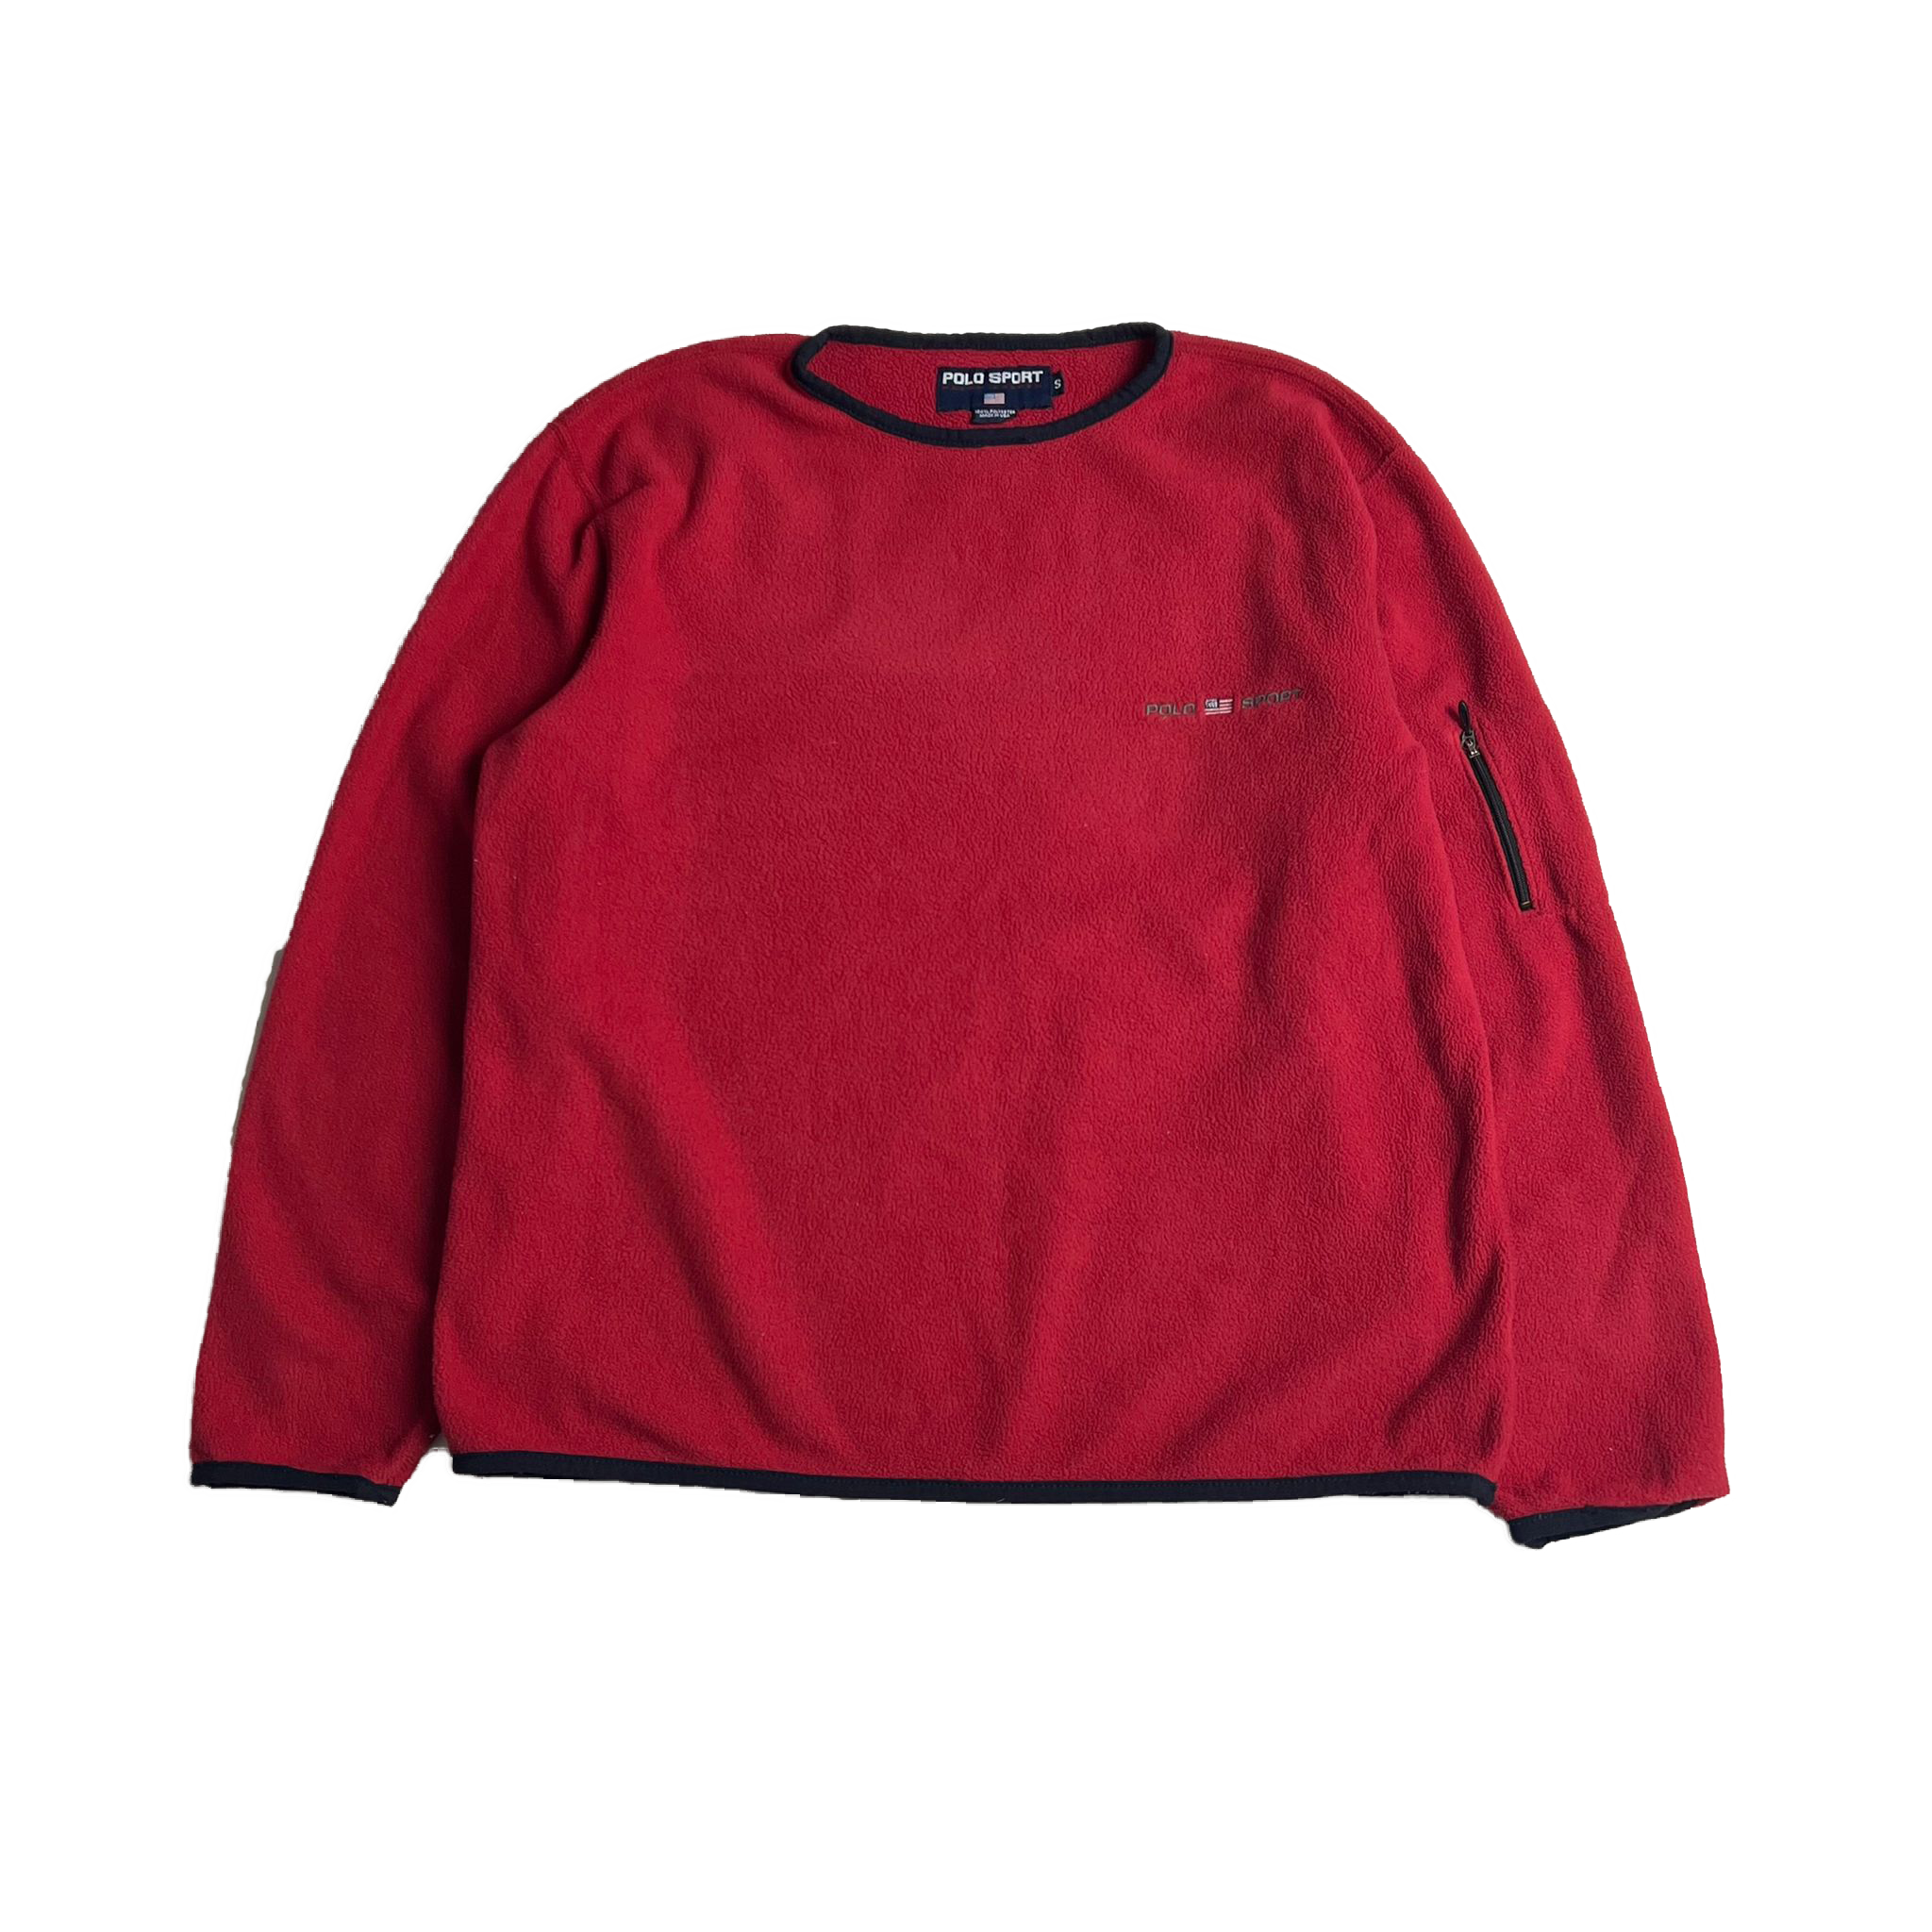 90's Polo Sport fleece sweatshirt